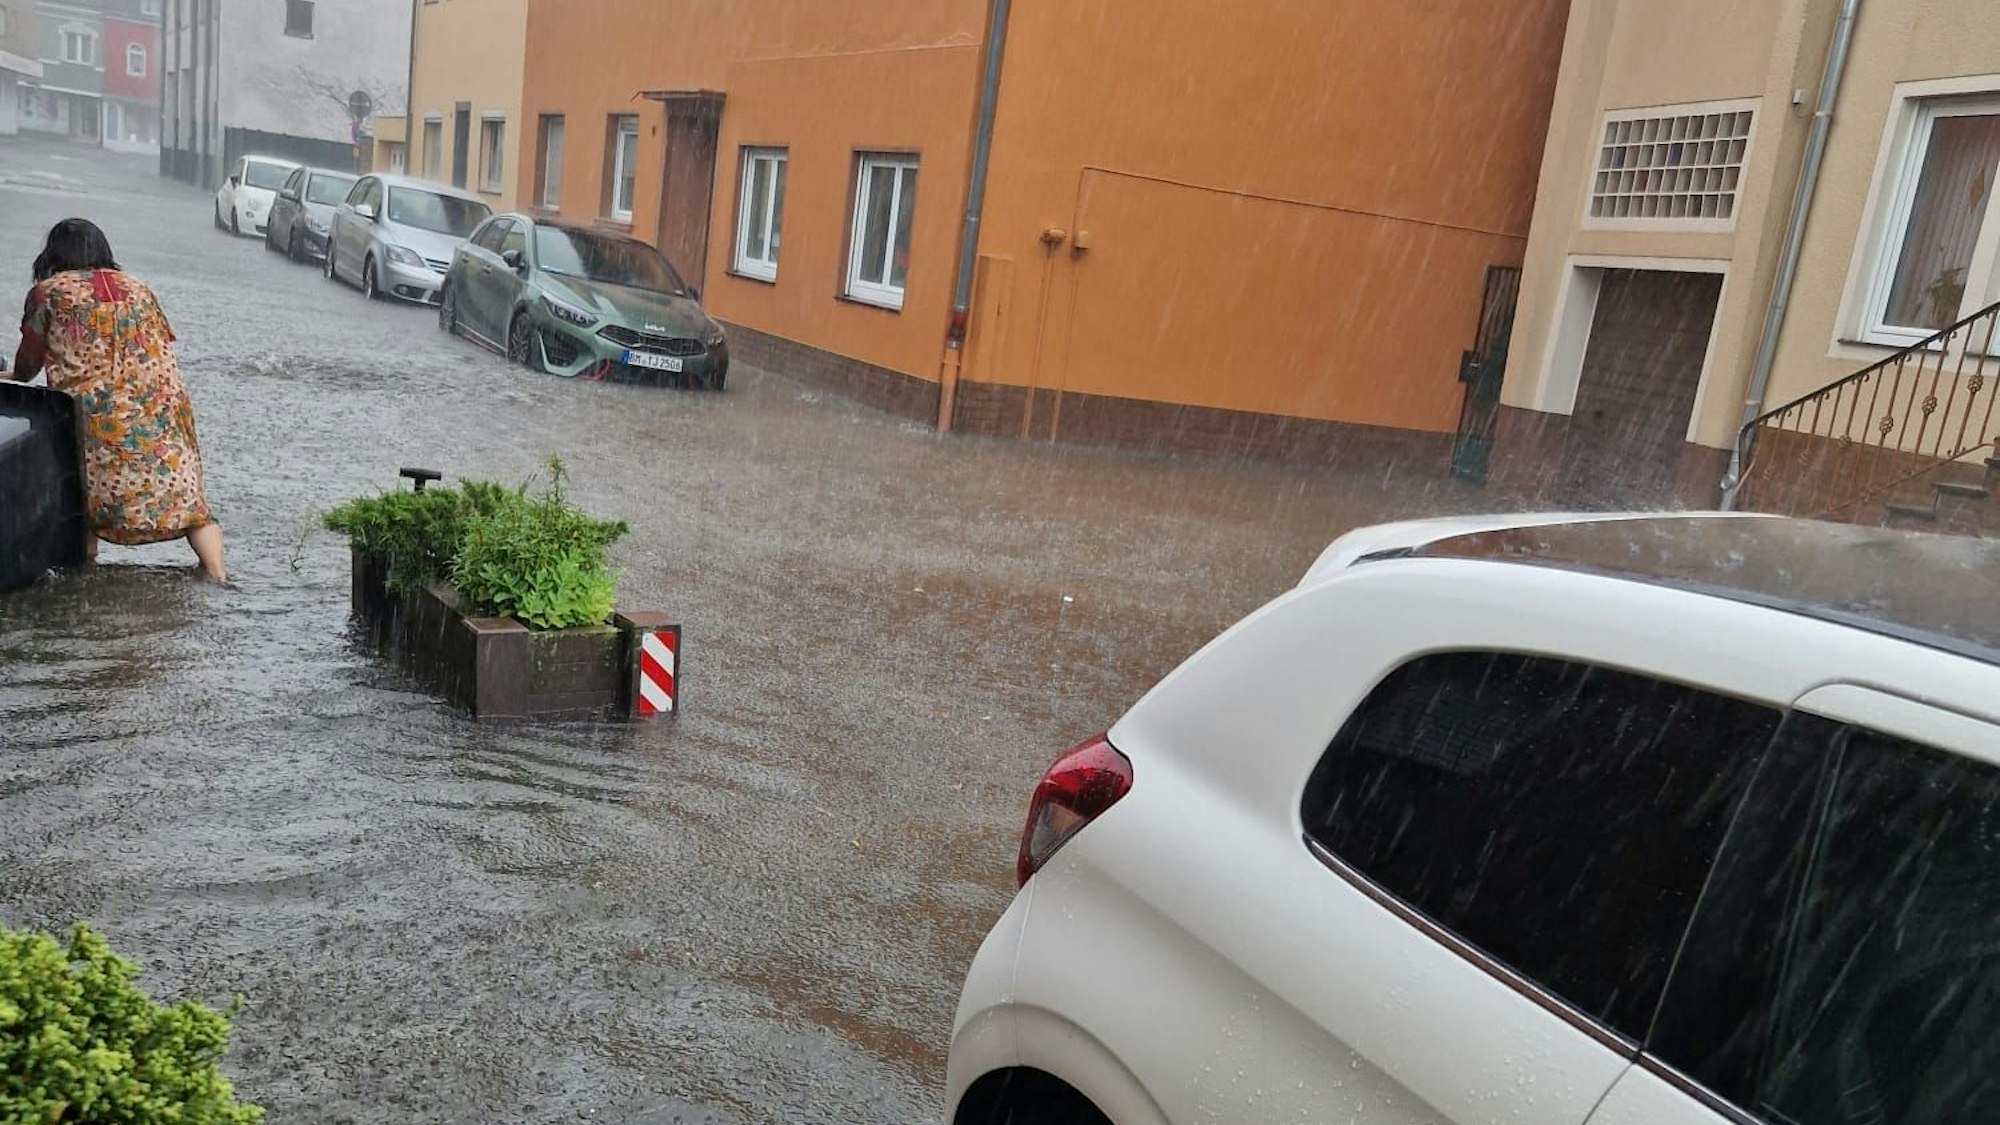 Eine Frau watet durch eine überflutete Straße, Autos stehen im Wasser.